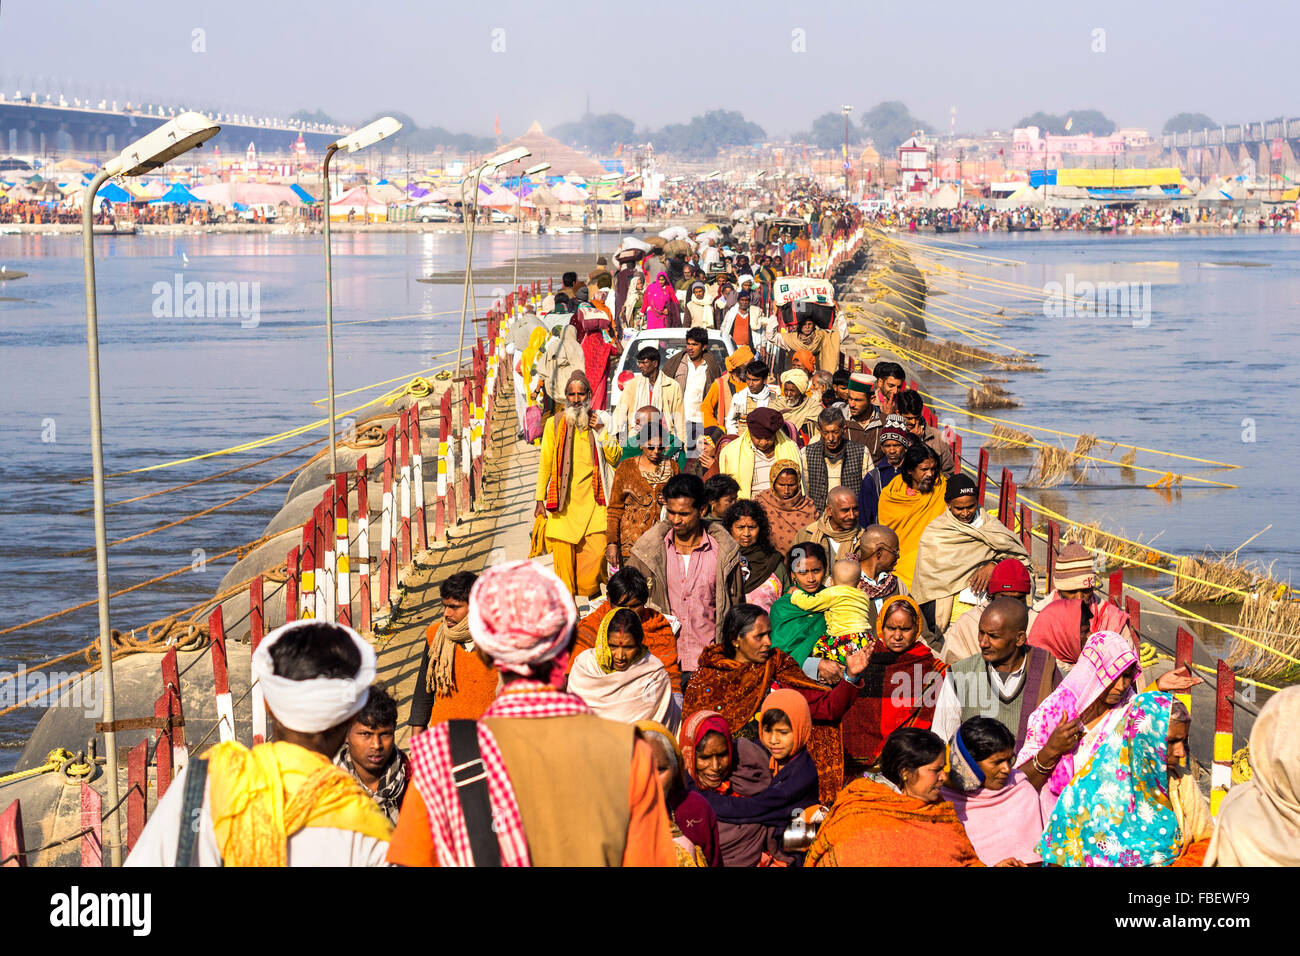 Foule traversant pont de bateaux sur le Gange au festival Kumbh Mela à Allahabad, Inde. Banque D'Images